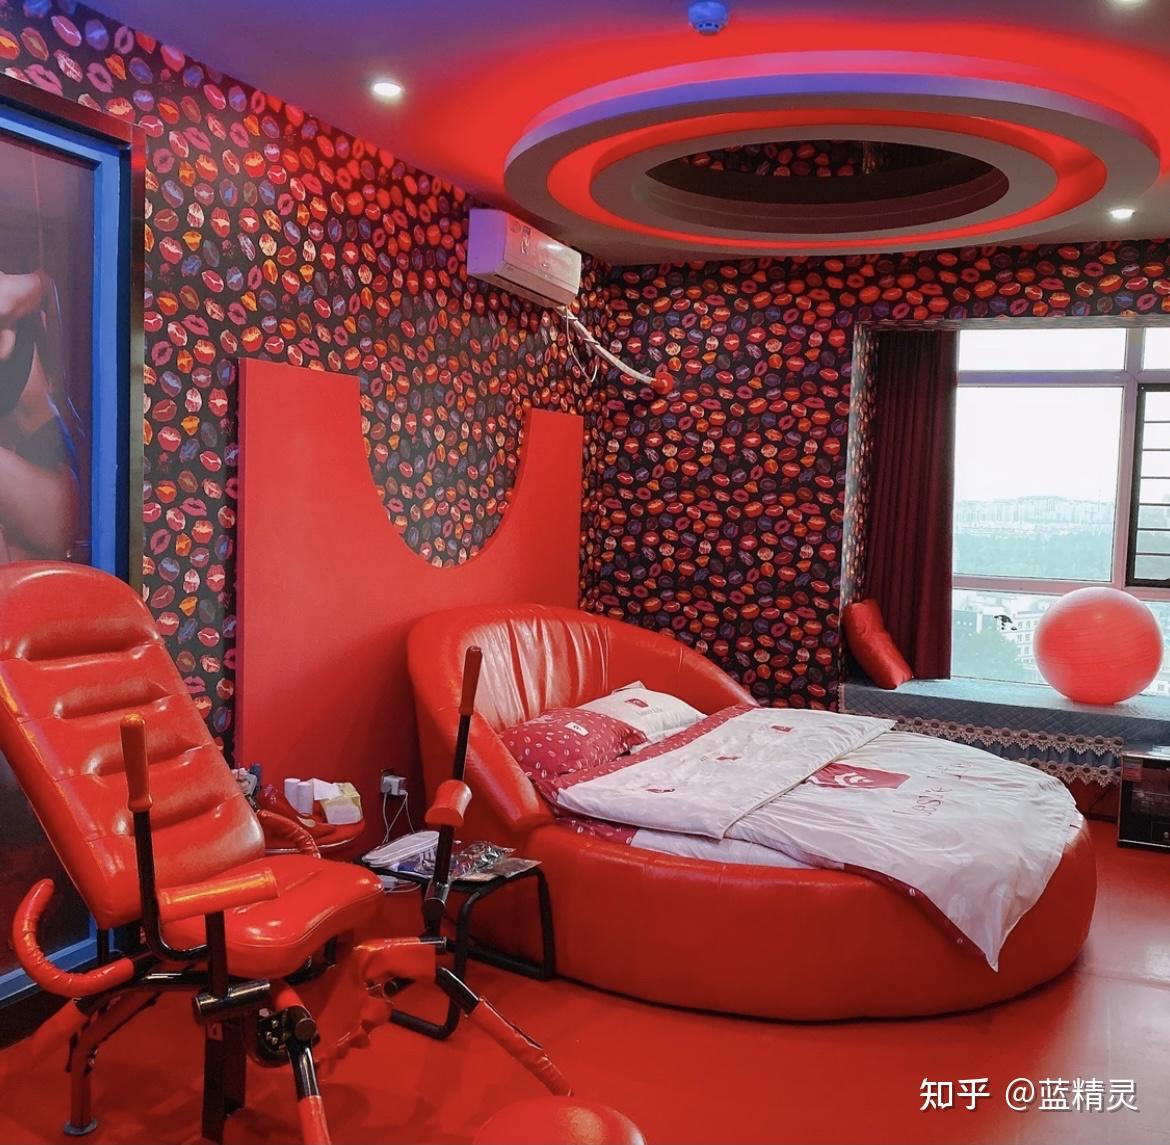 如何使用,南京高端酒店桑拿会所里面的情趣房间,老司机都懂得!